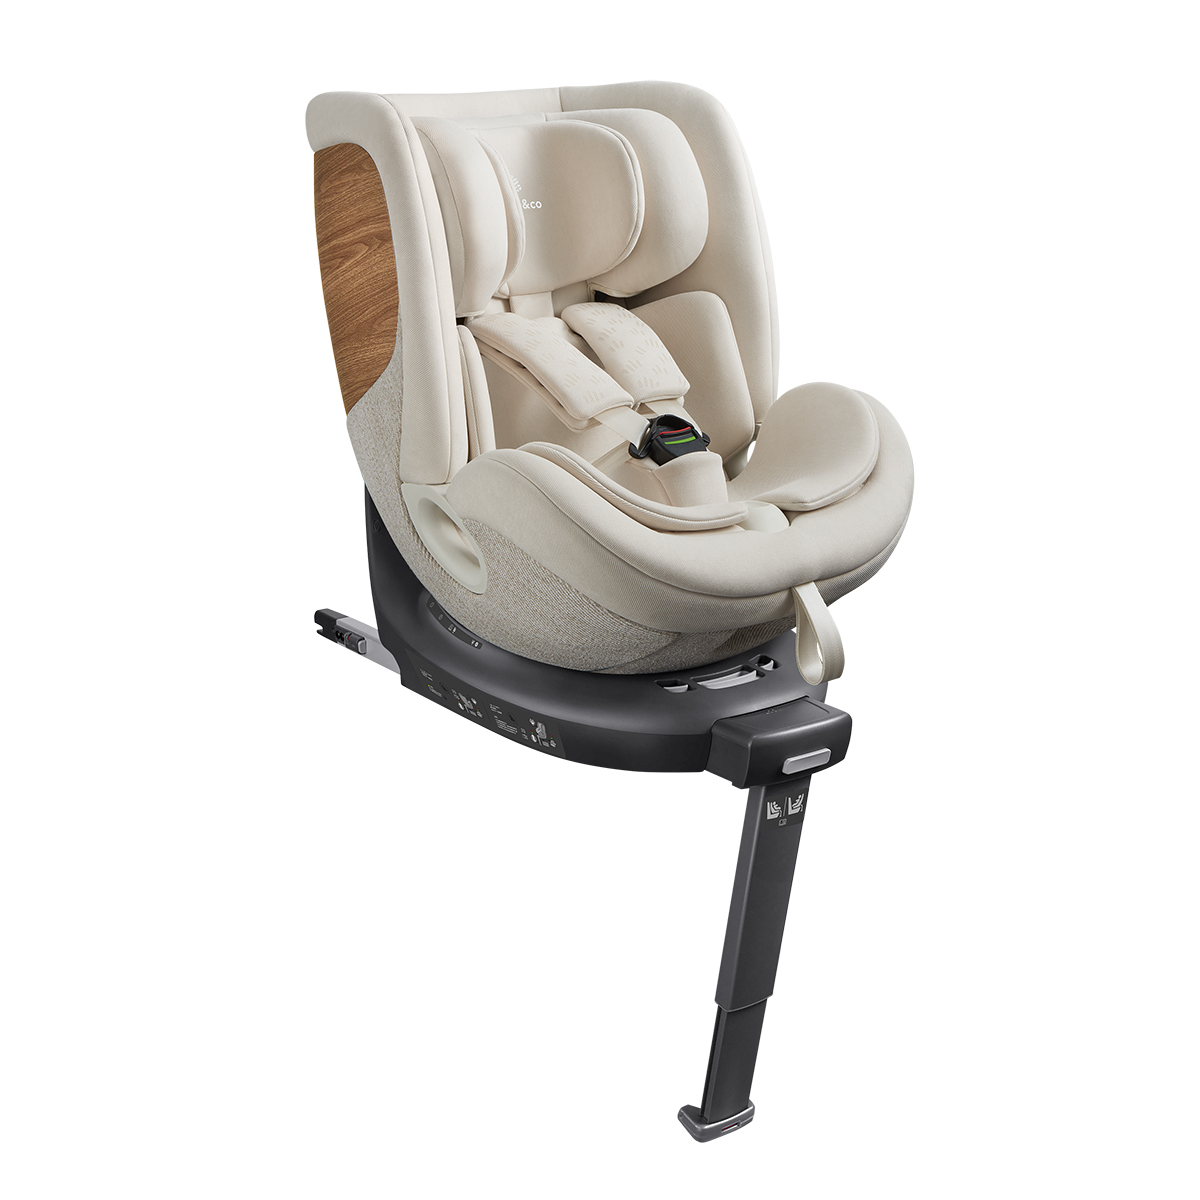 YKO - Maple&Co Child Car Seat - White